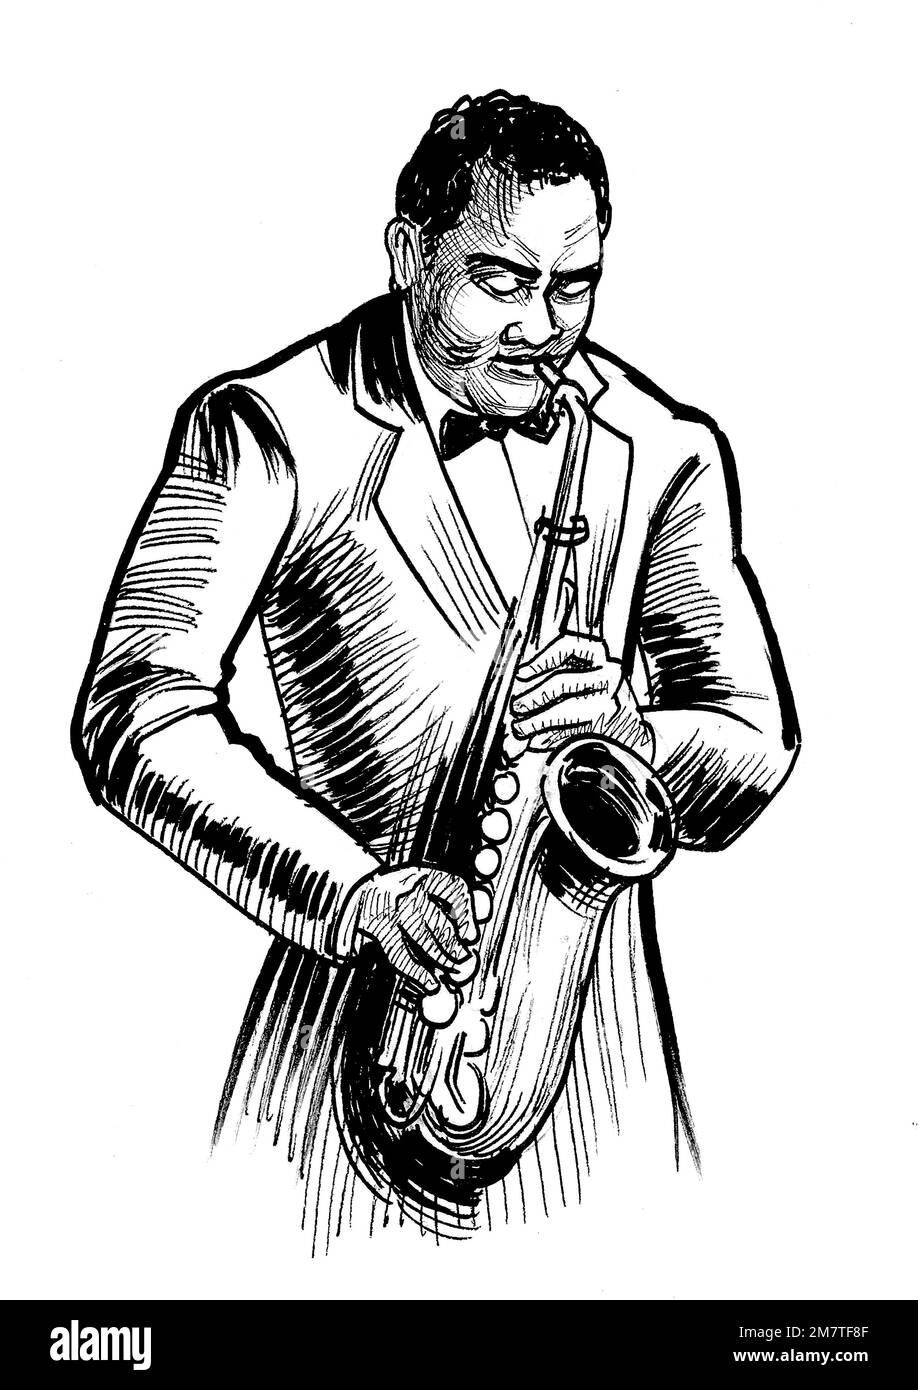 Musicien afro-américain jouant du saxophone. dessin noir et blanc Banque D'Images